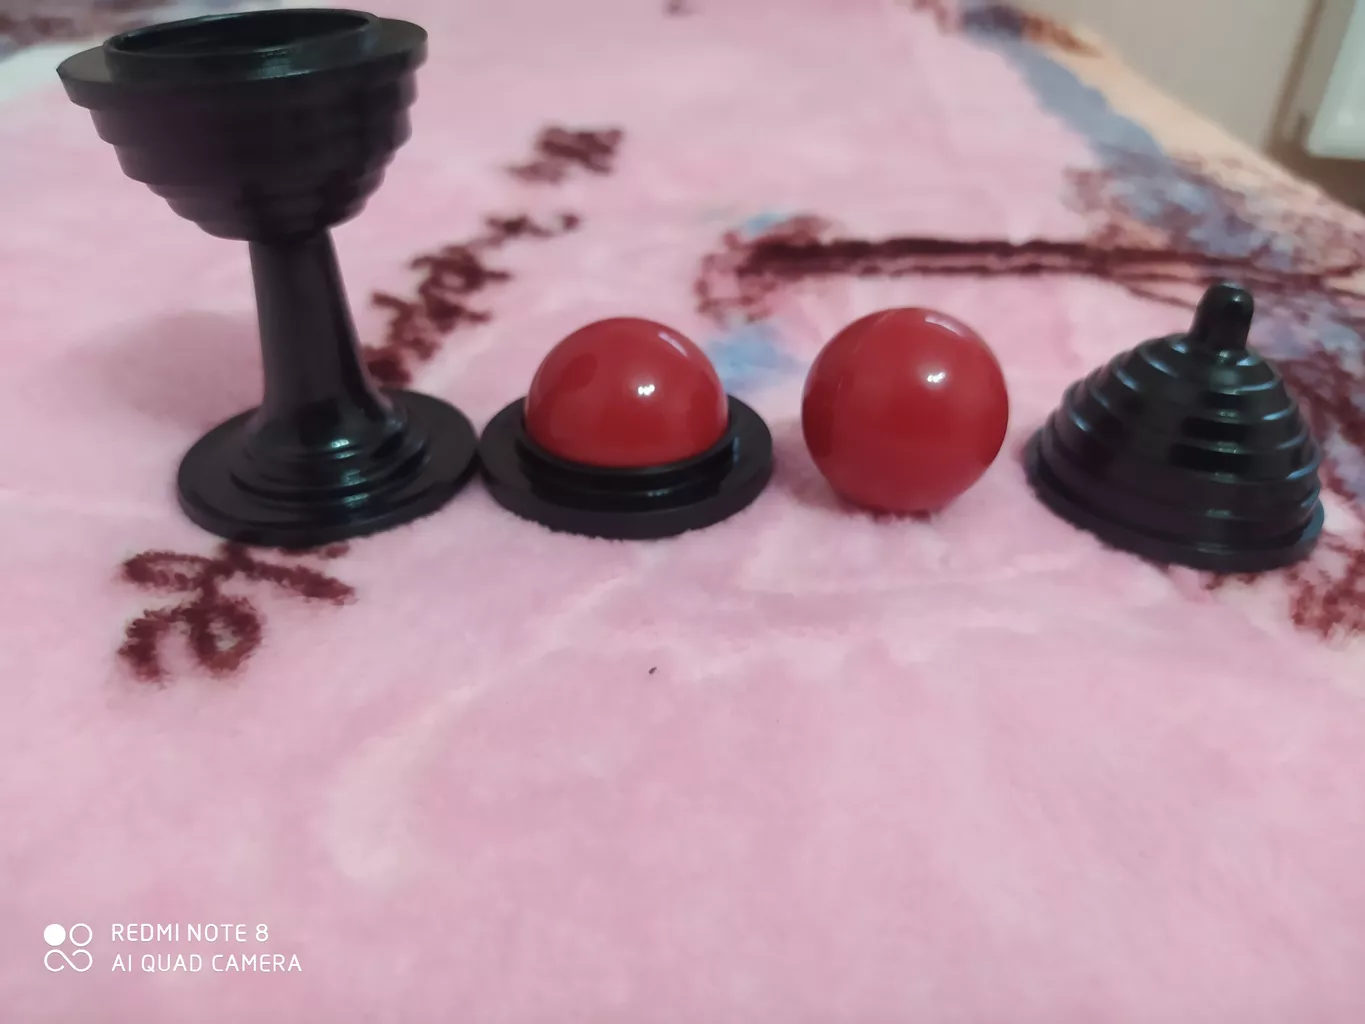 ابزار شعبده بازی مدل توپ و قندان سحرامیز DSK